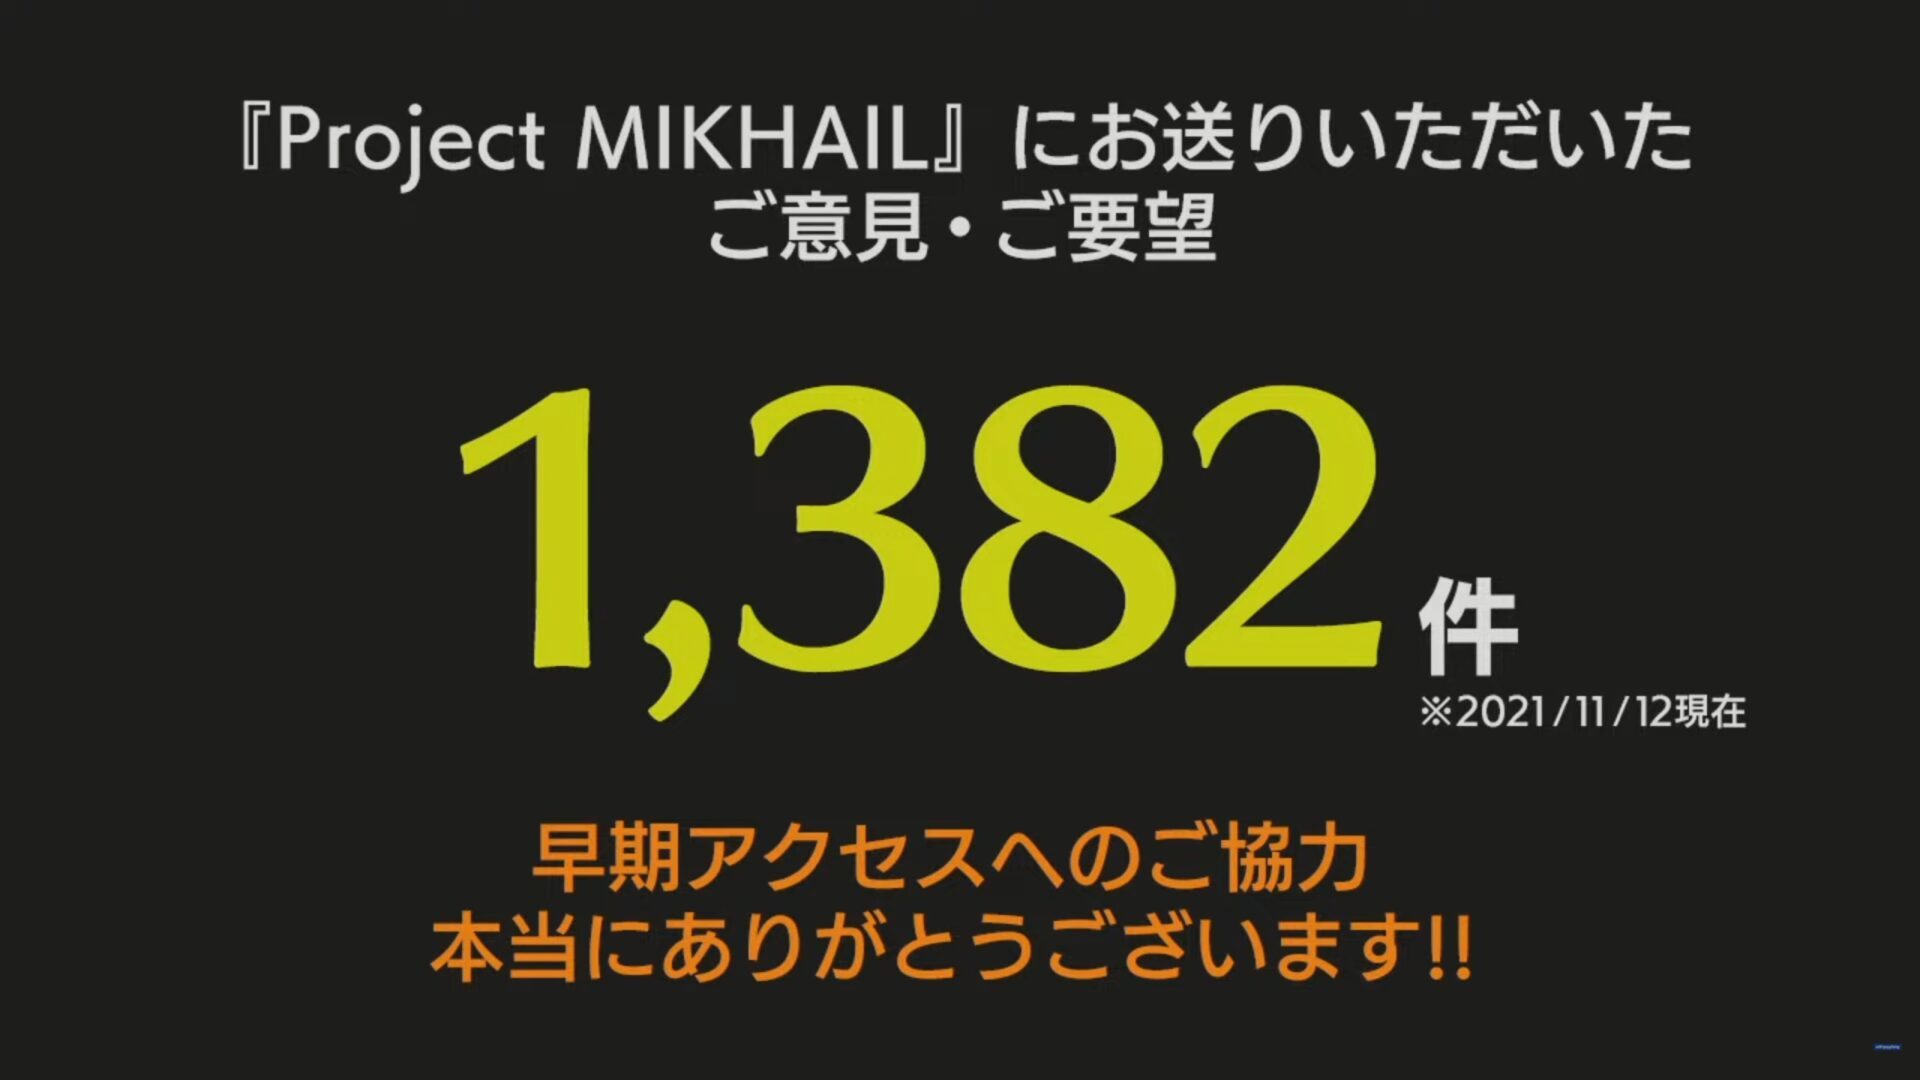 projek-mikhail-1-3805627